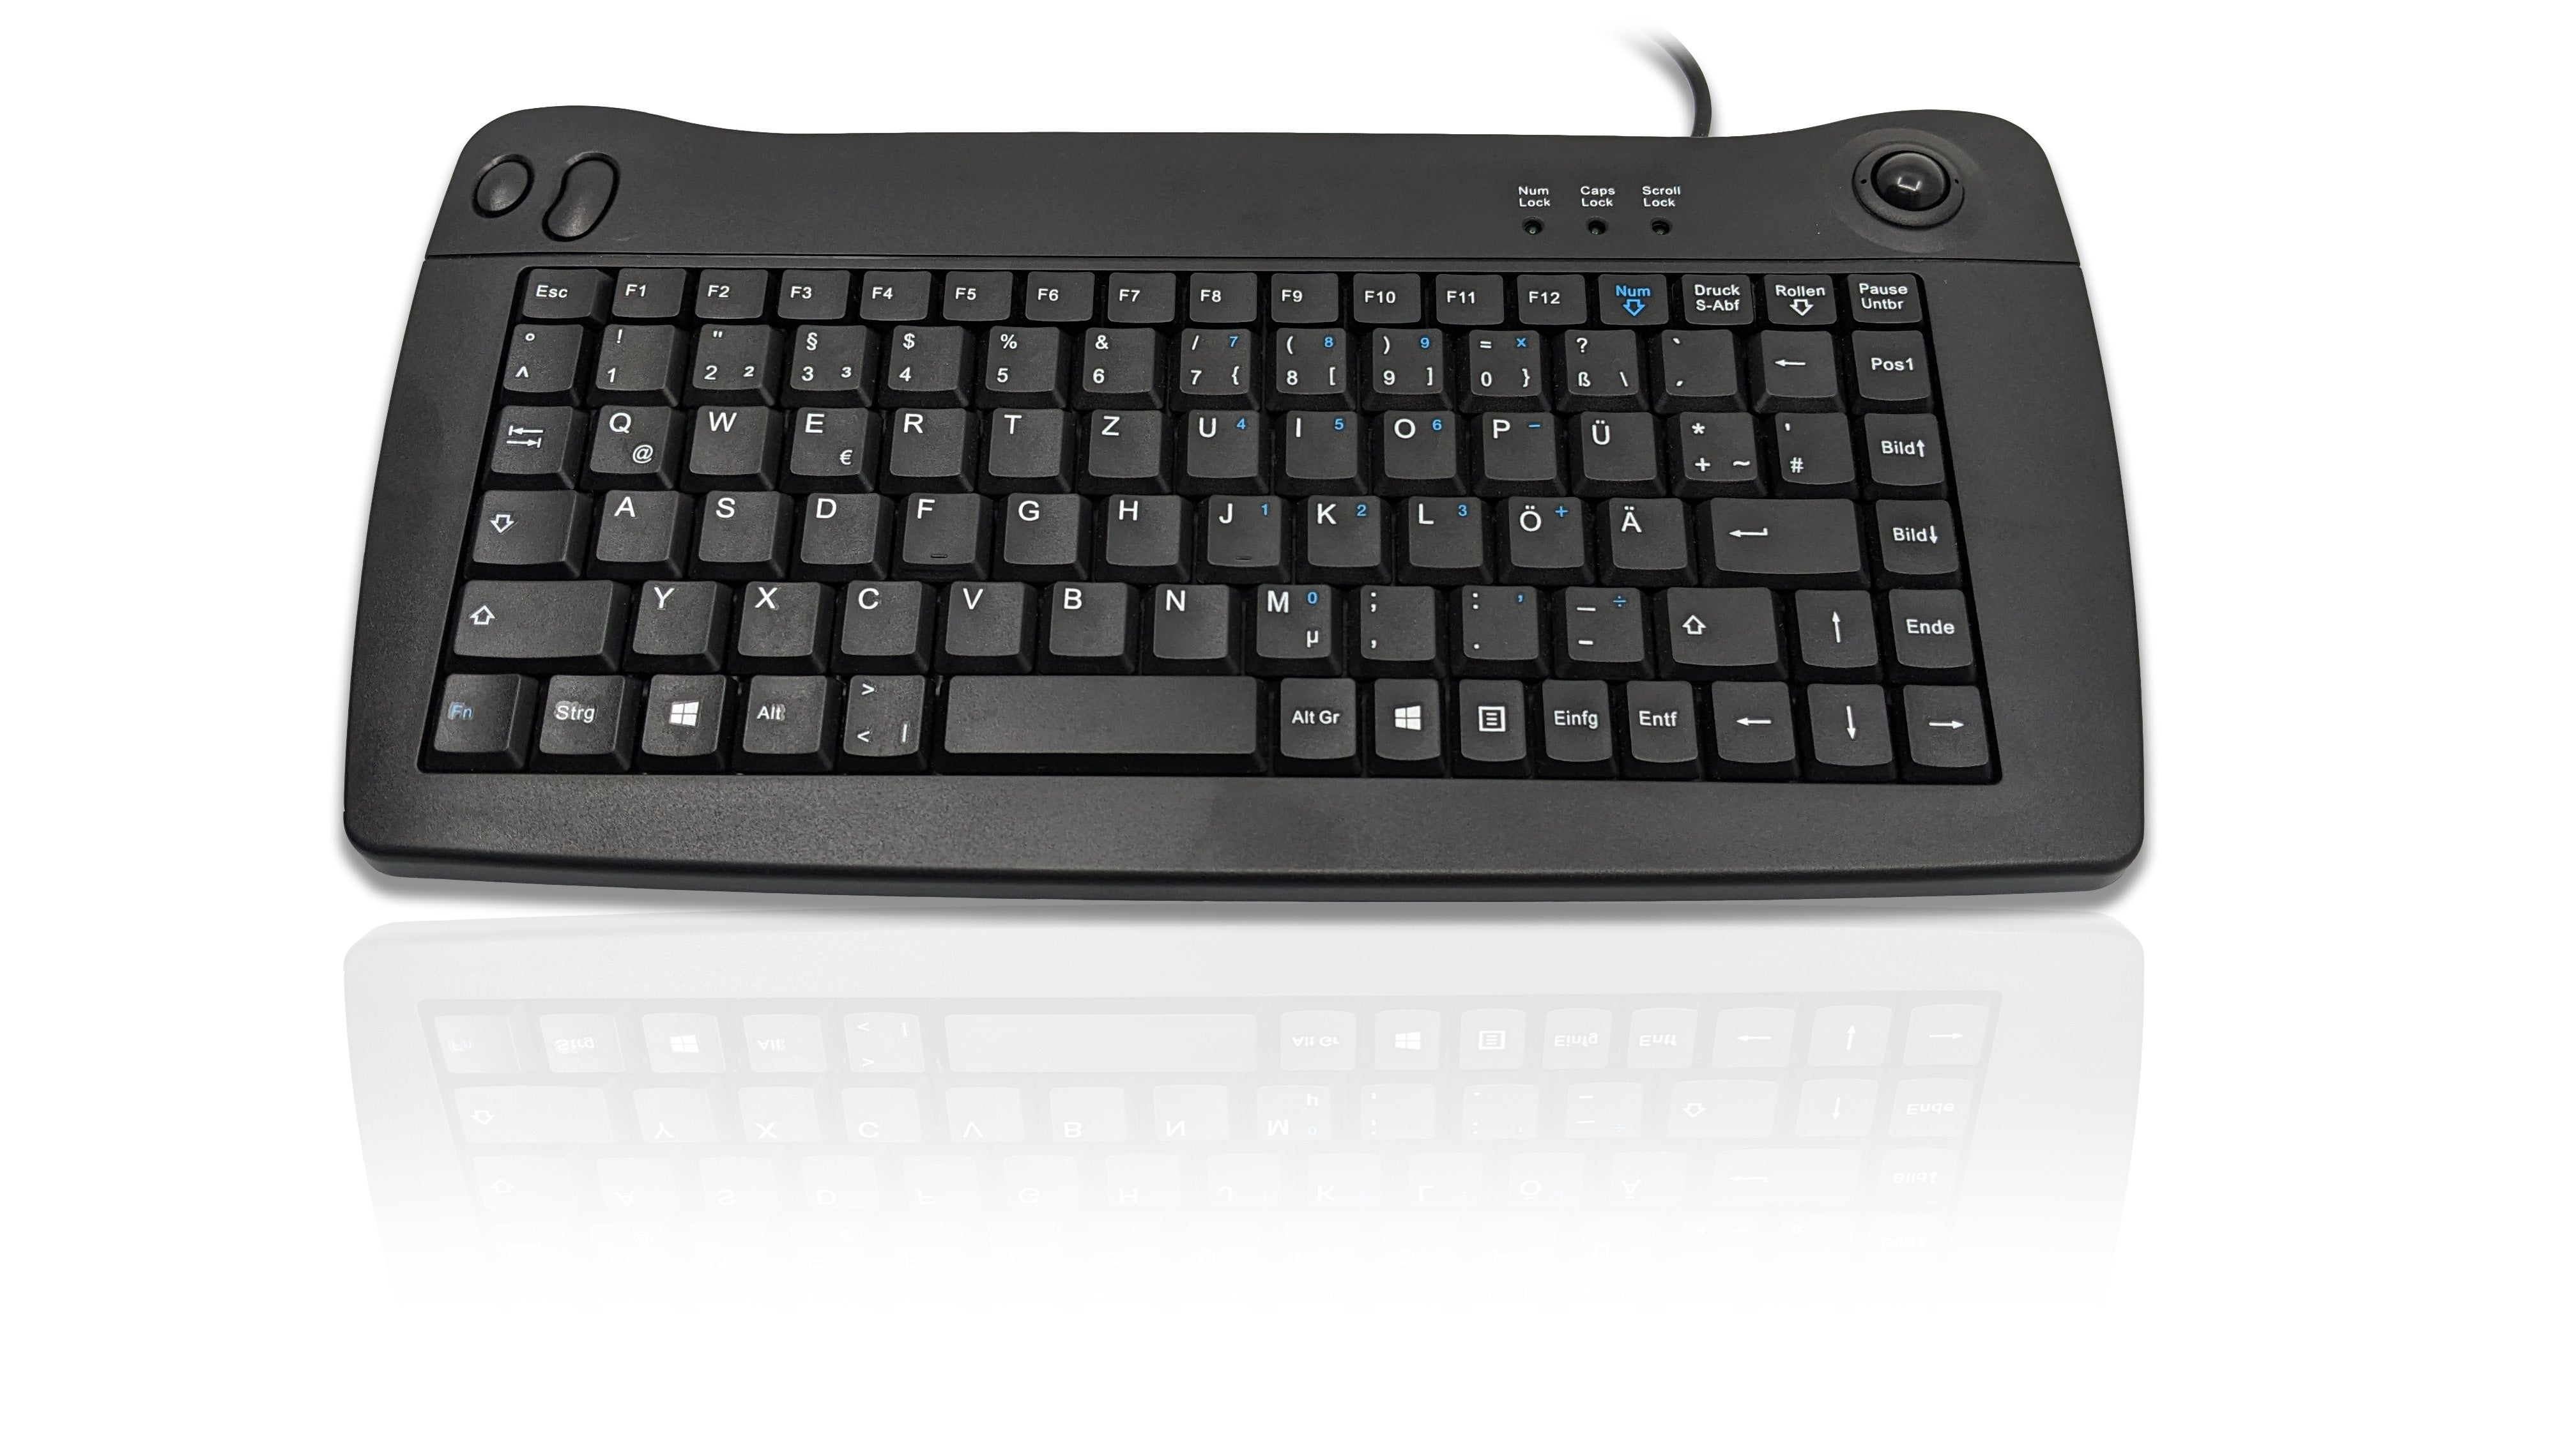 Accuratus 5010 - USB Mini All in One Keyboard with Trackball